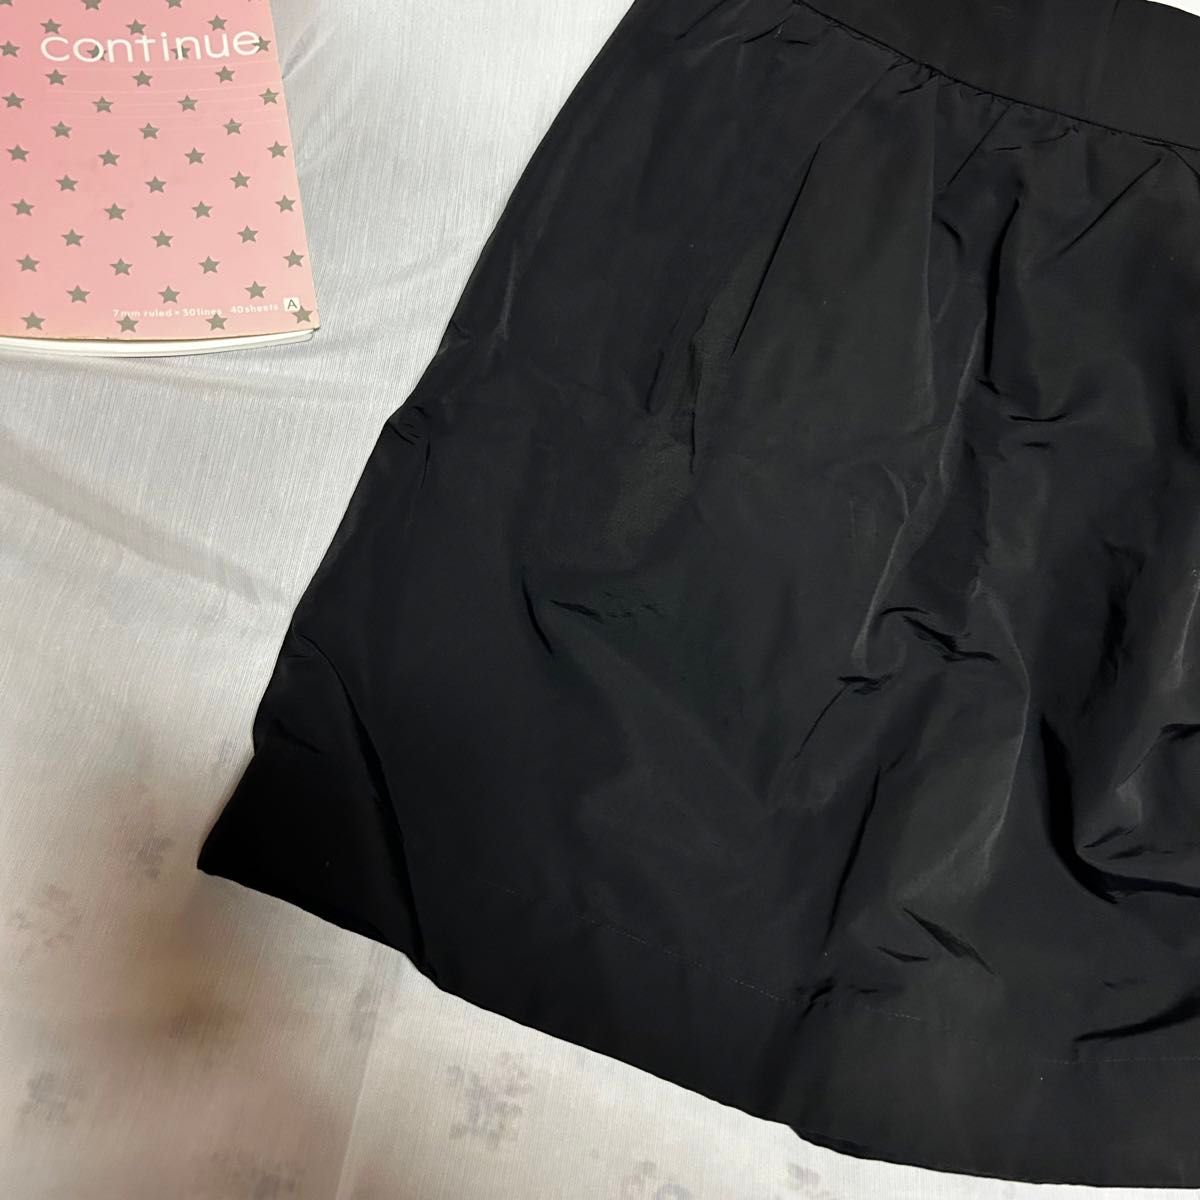 【ル メランジュ】 美品 膝丈スカートM 黒 サイドチャック 光沢 バルーン ブラック スカート